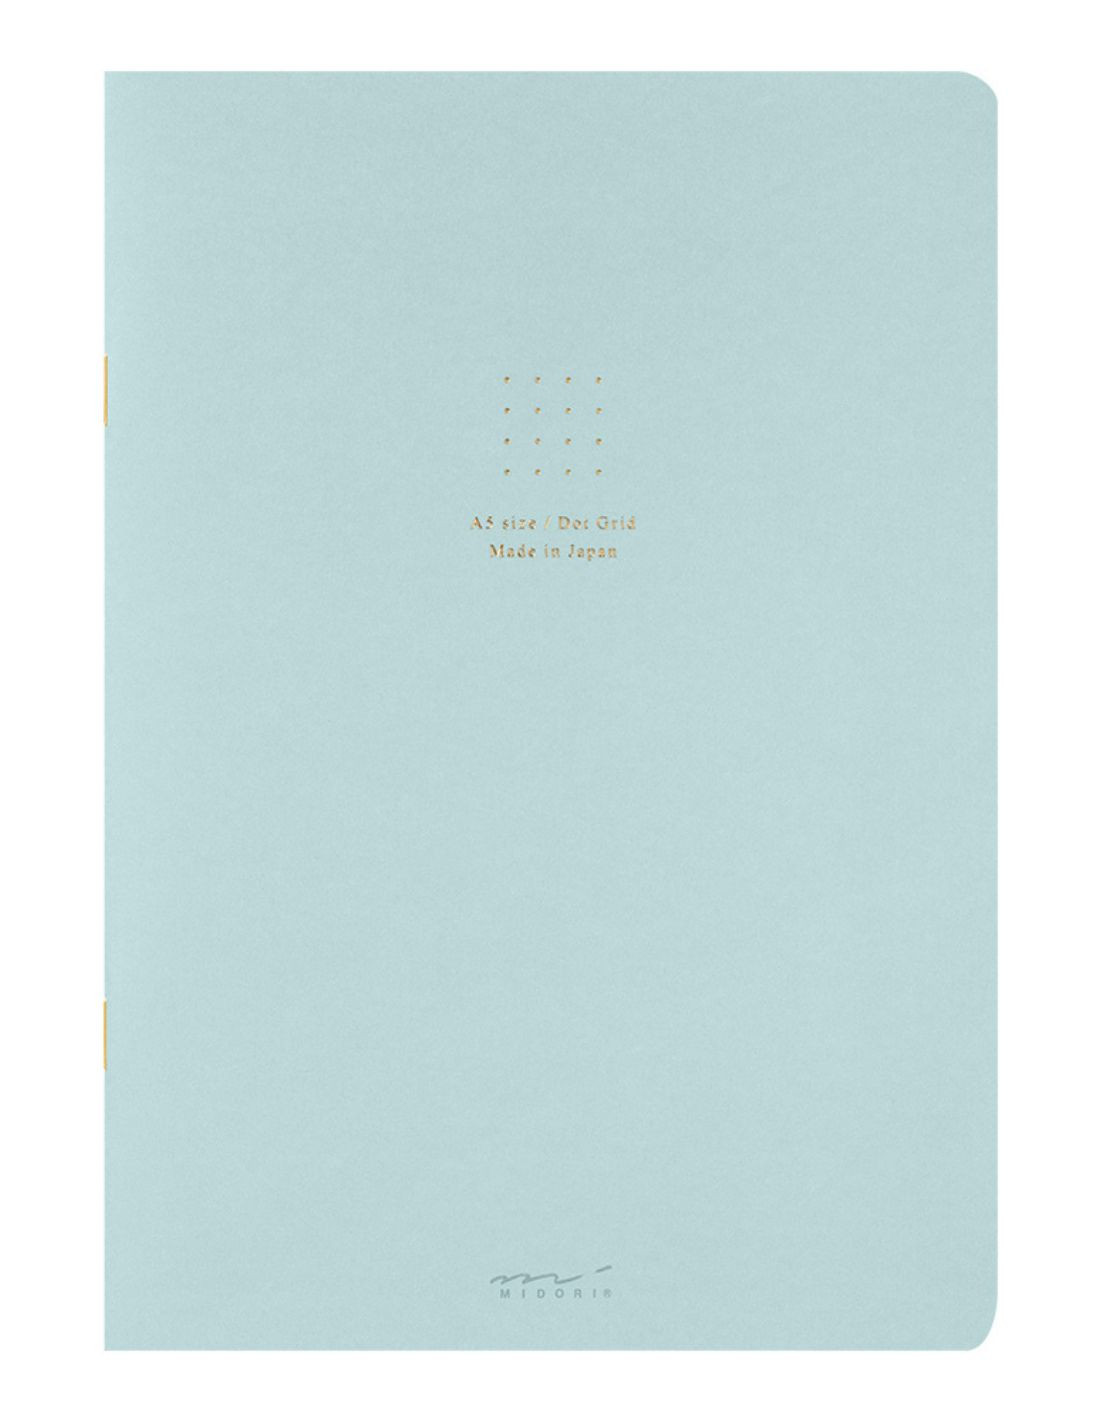 Carnet Bullet Journal 13 x 21 cm Vert 192 pages Legami chez Rougier & Plé